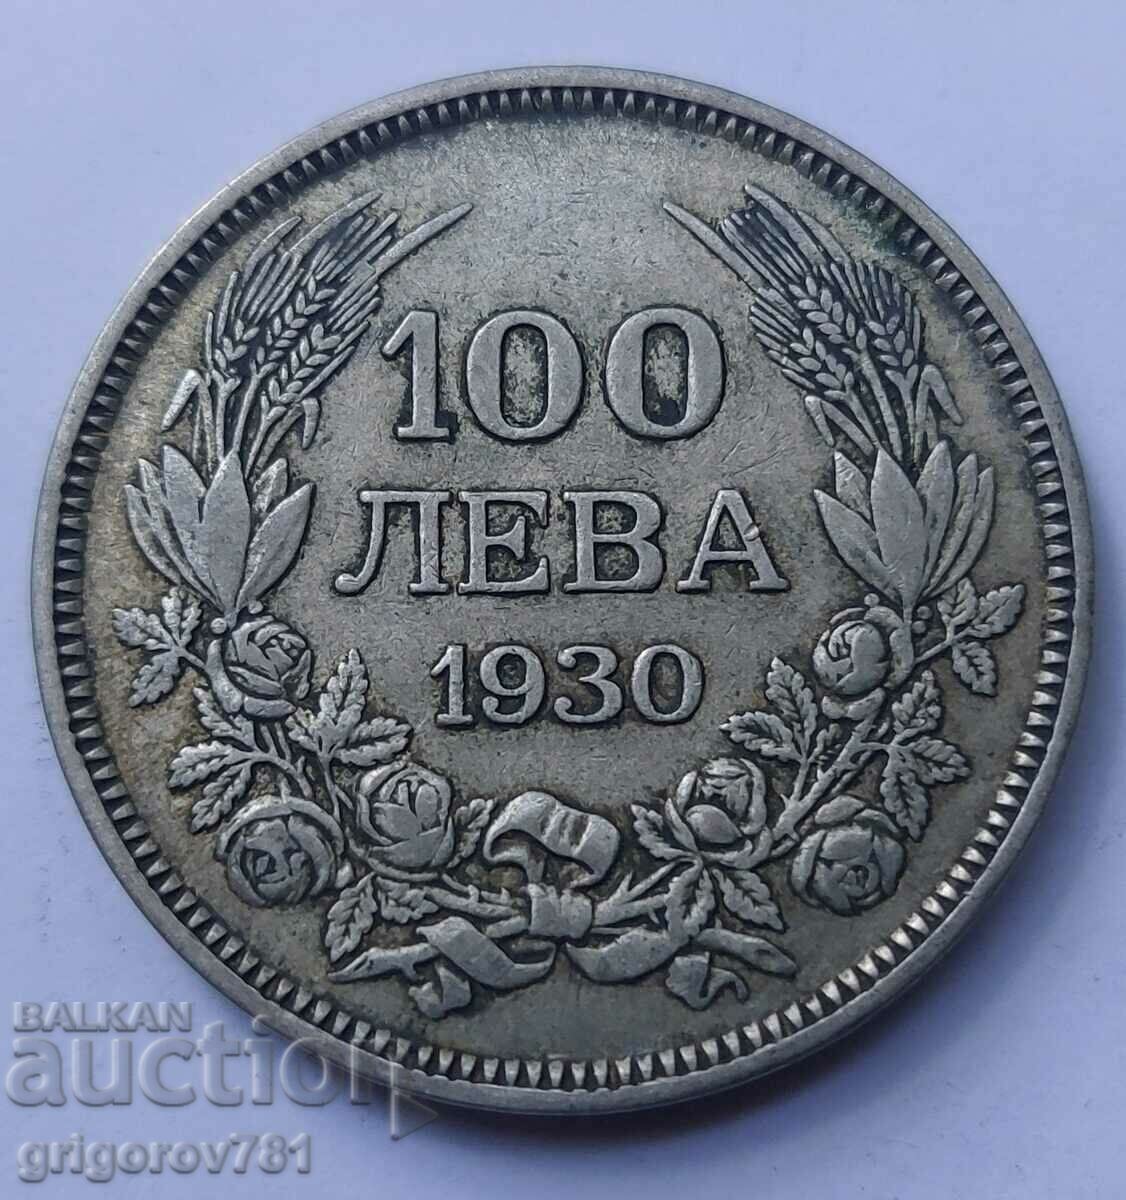 100 leva argint Bulgaria 1930 - monedă de argint #32